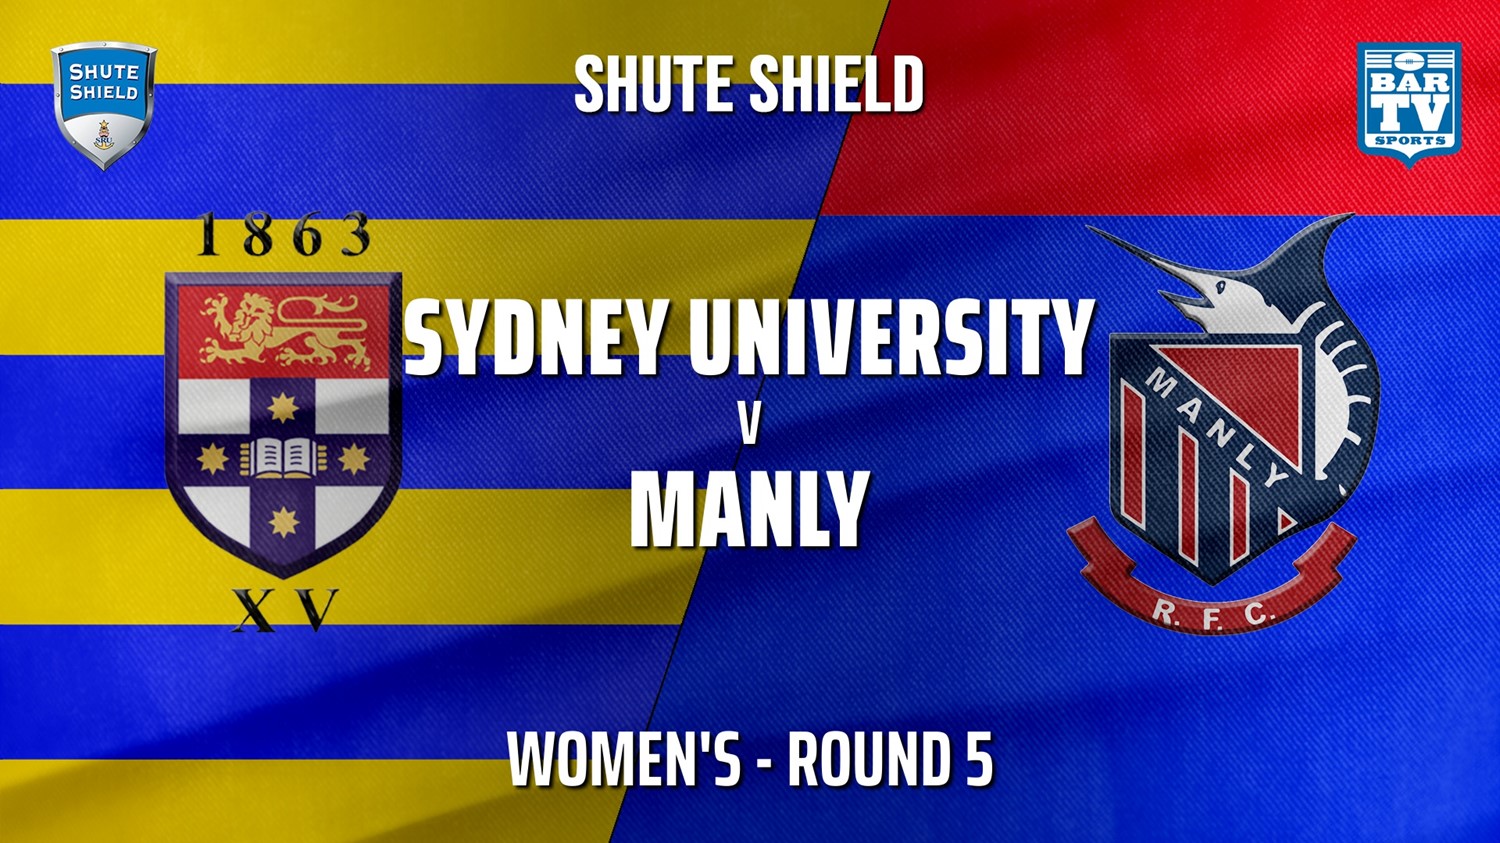 210508-Shute Shield Round 5 - Women's - Sydney University v Manly Slate Image